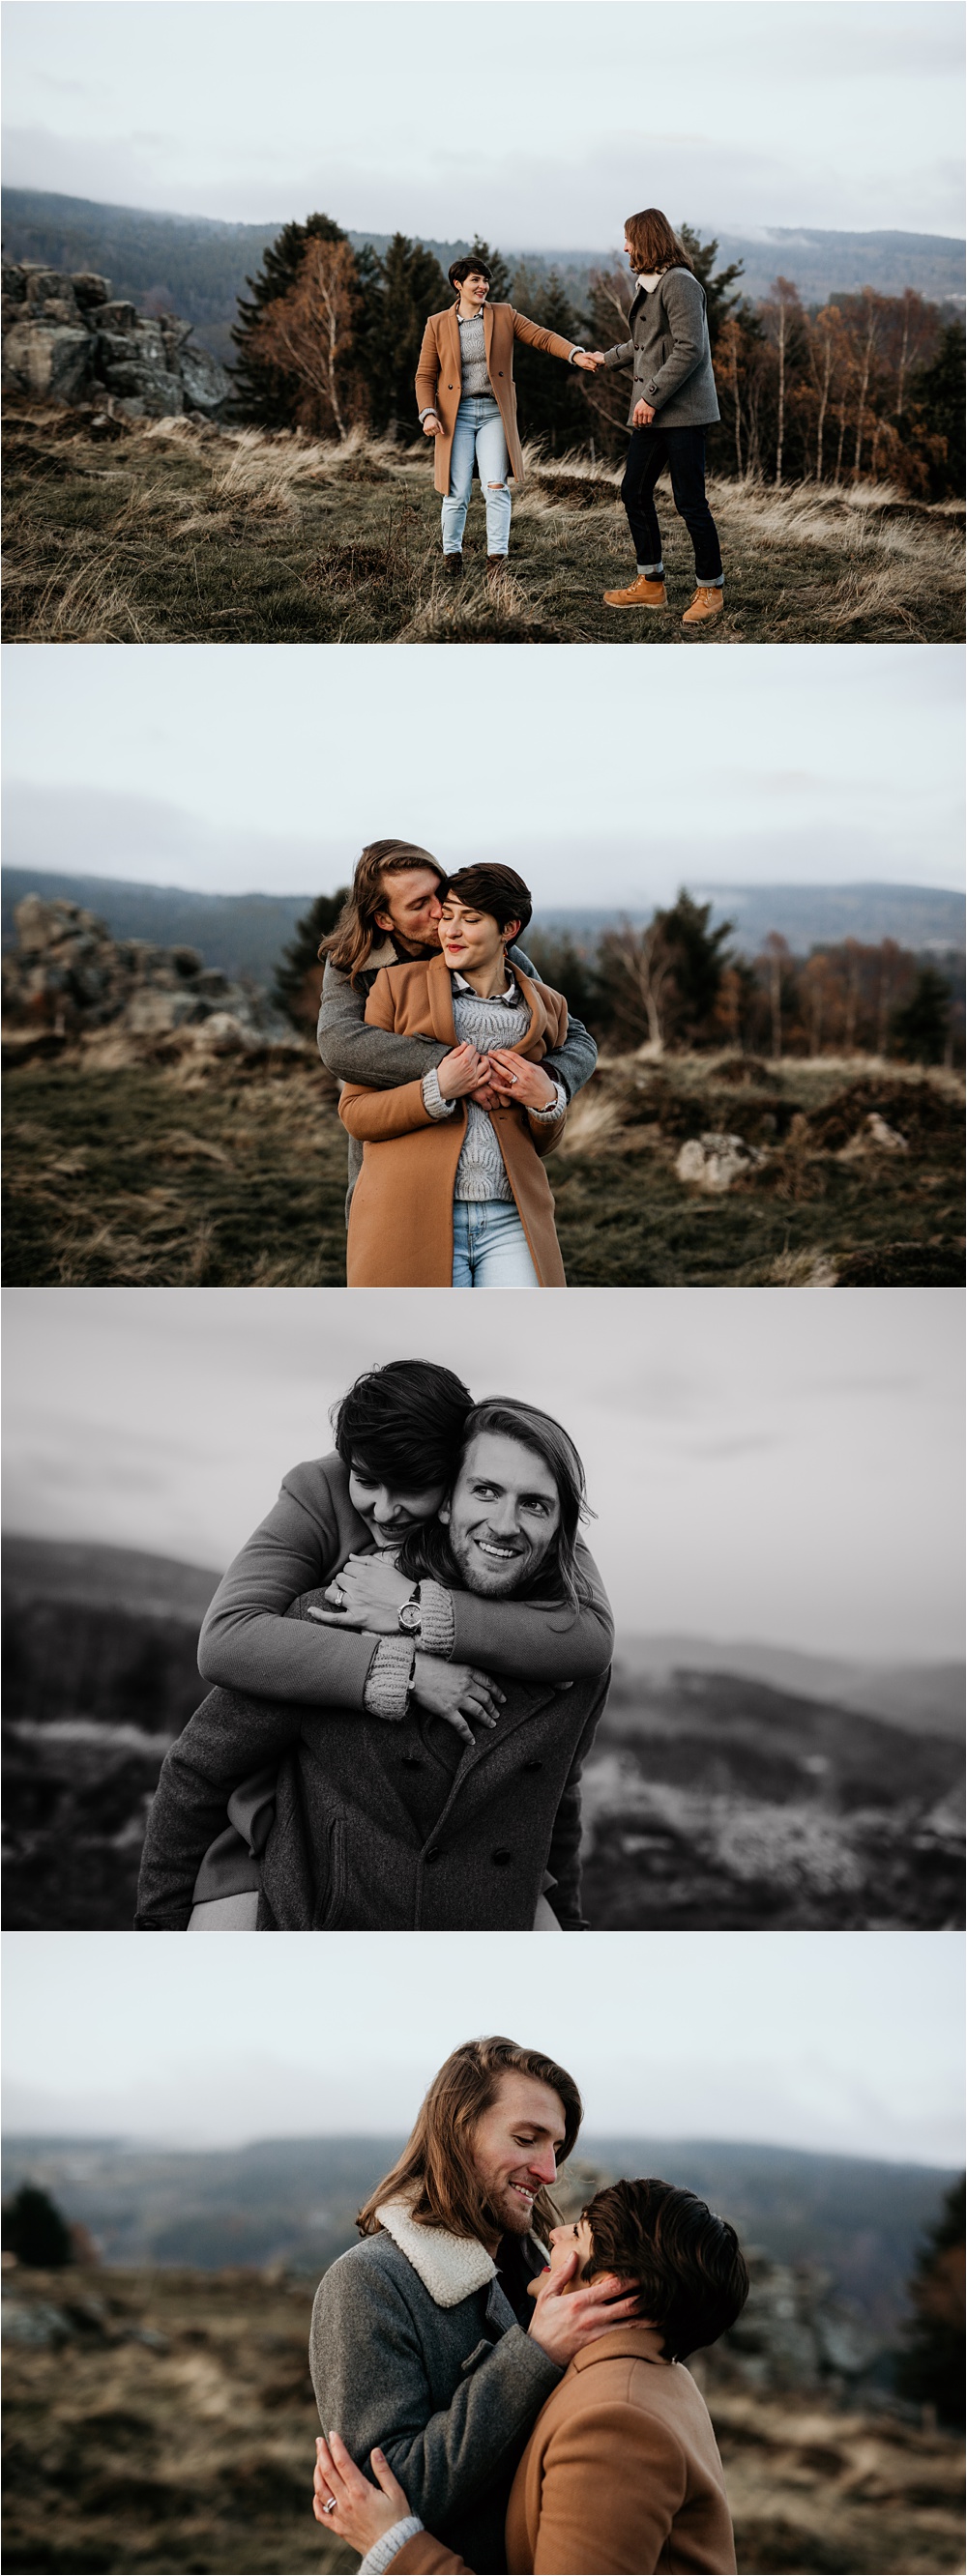 Séance-engagement-photographe-mariage-alsace-boho-nature-Fanny-Auer